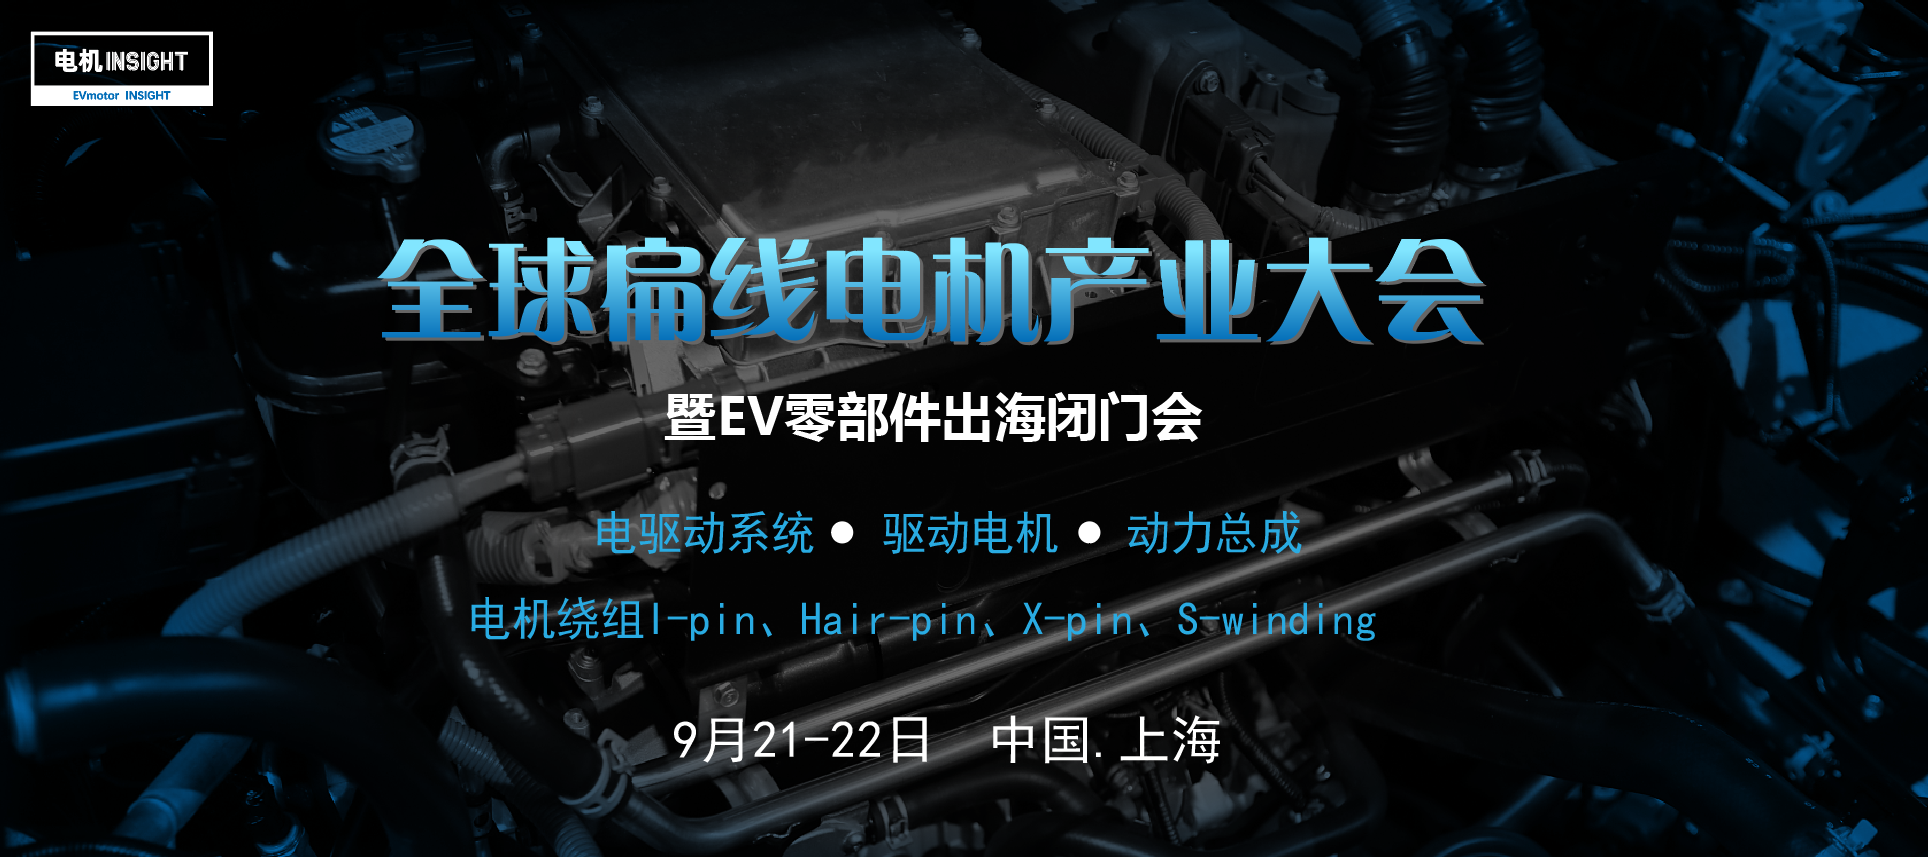 全球新能源汽车扁线电机产业大会于9月在上海盛大召开！